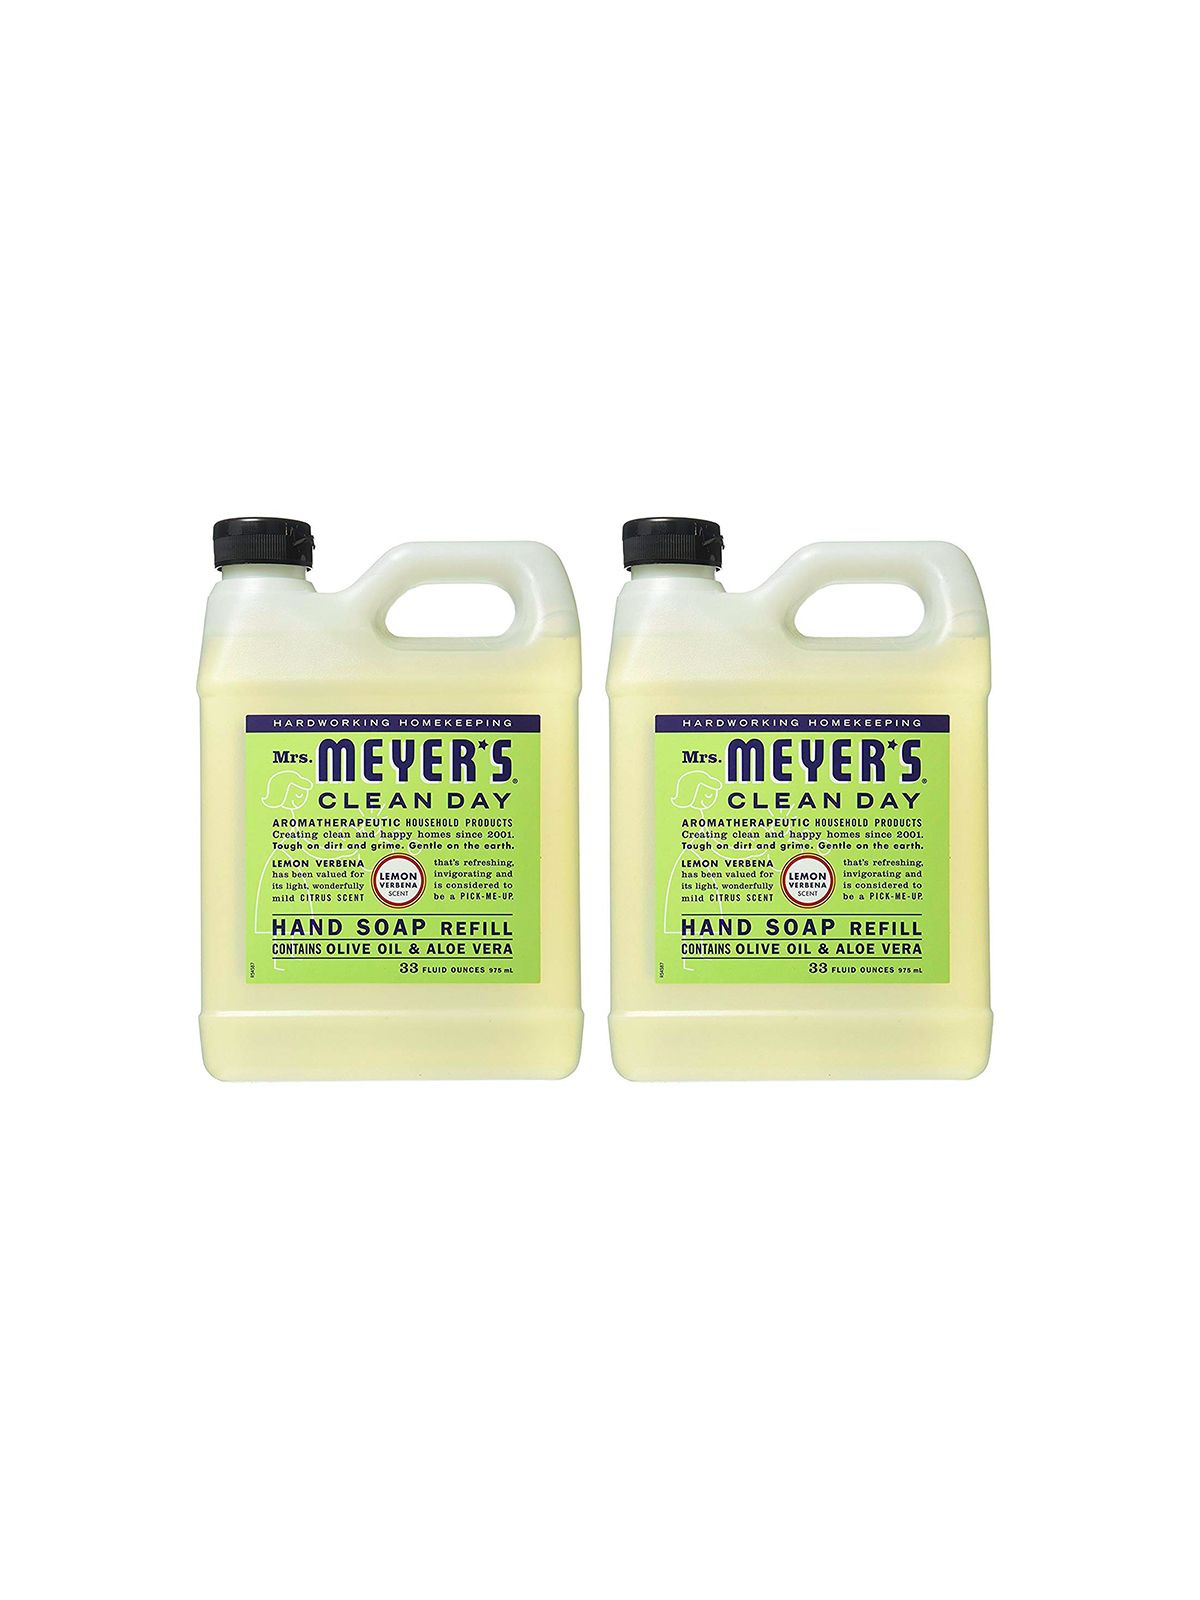 Produits de nettoyage en vrac, recharge de savon pour les mains Mme Meyers